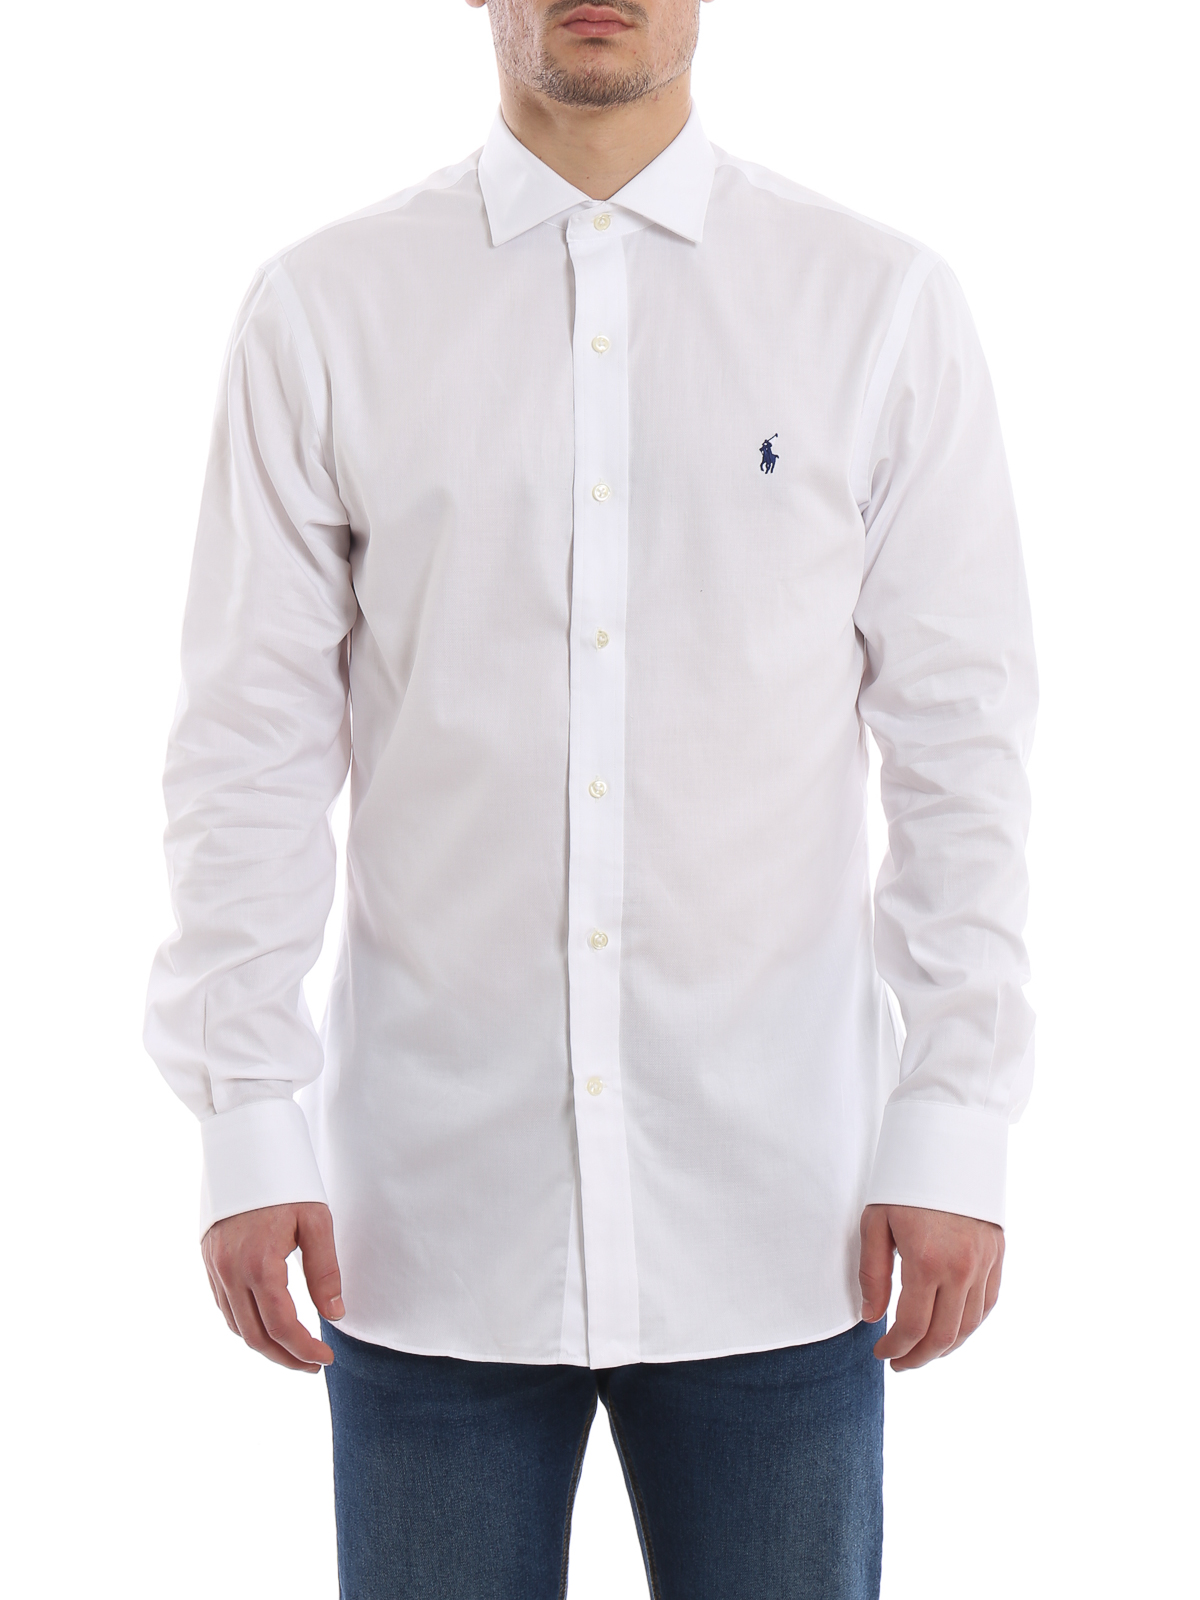 op vakantie mond koppeling Hemden Polo Ralph Lauren - Hemd - Weiß - 712732129006 | iKRIX Shop online